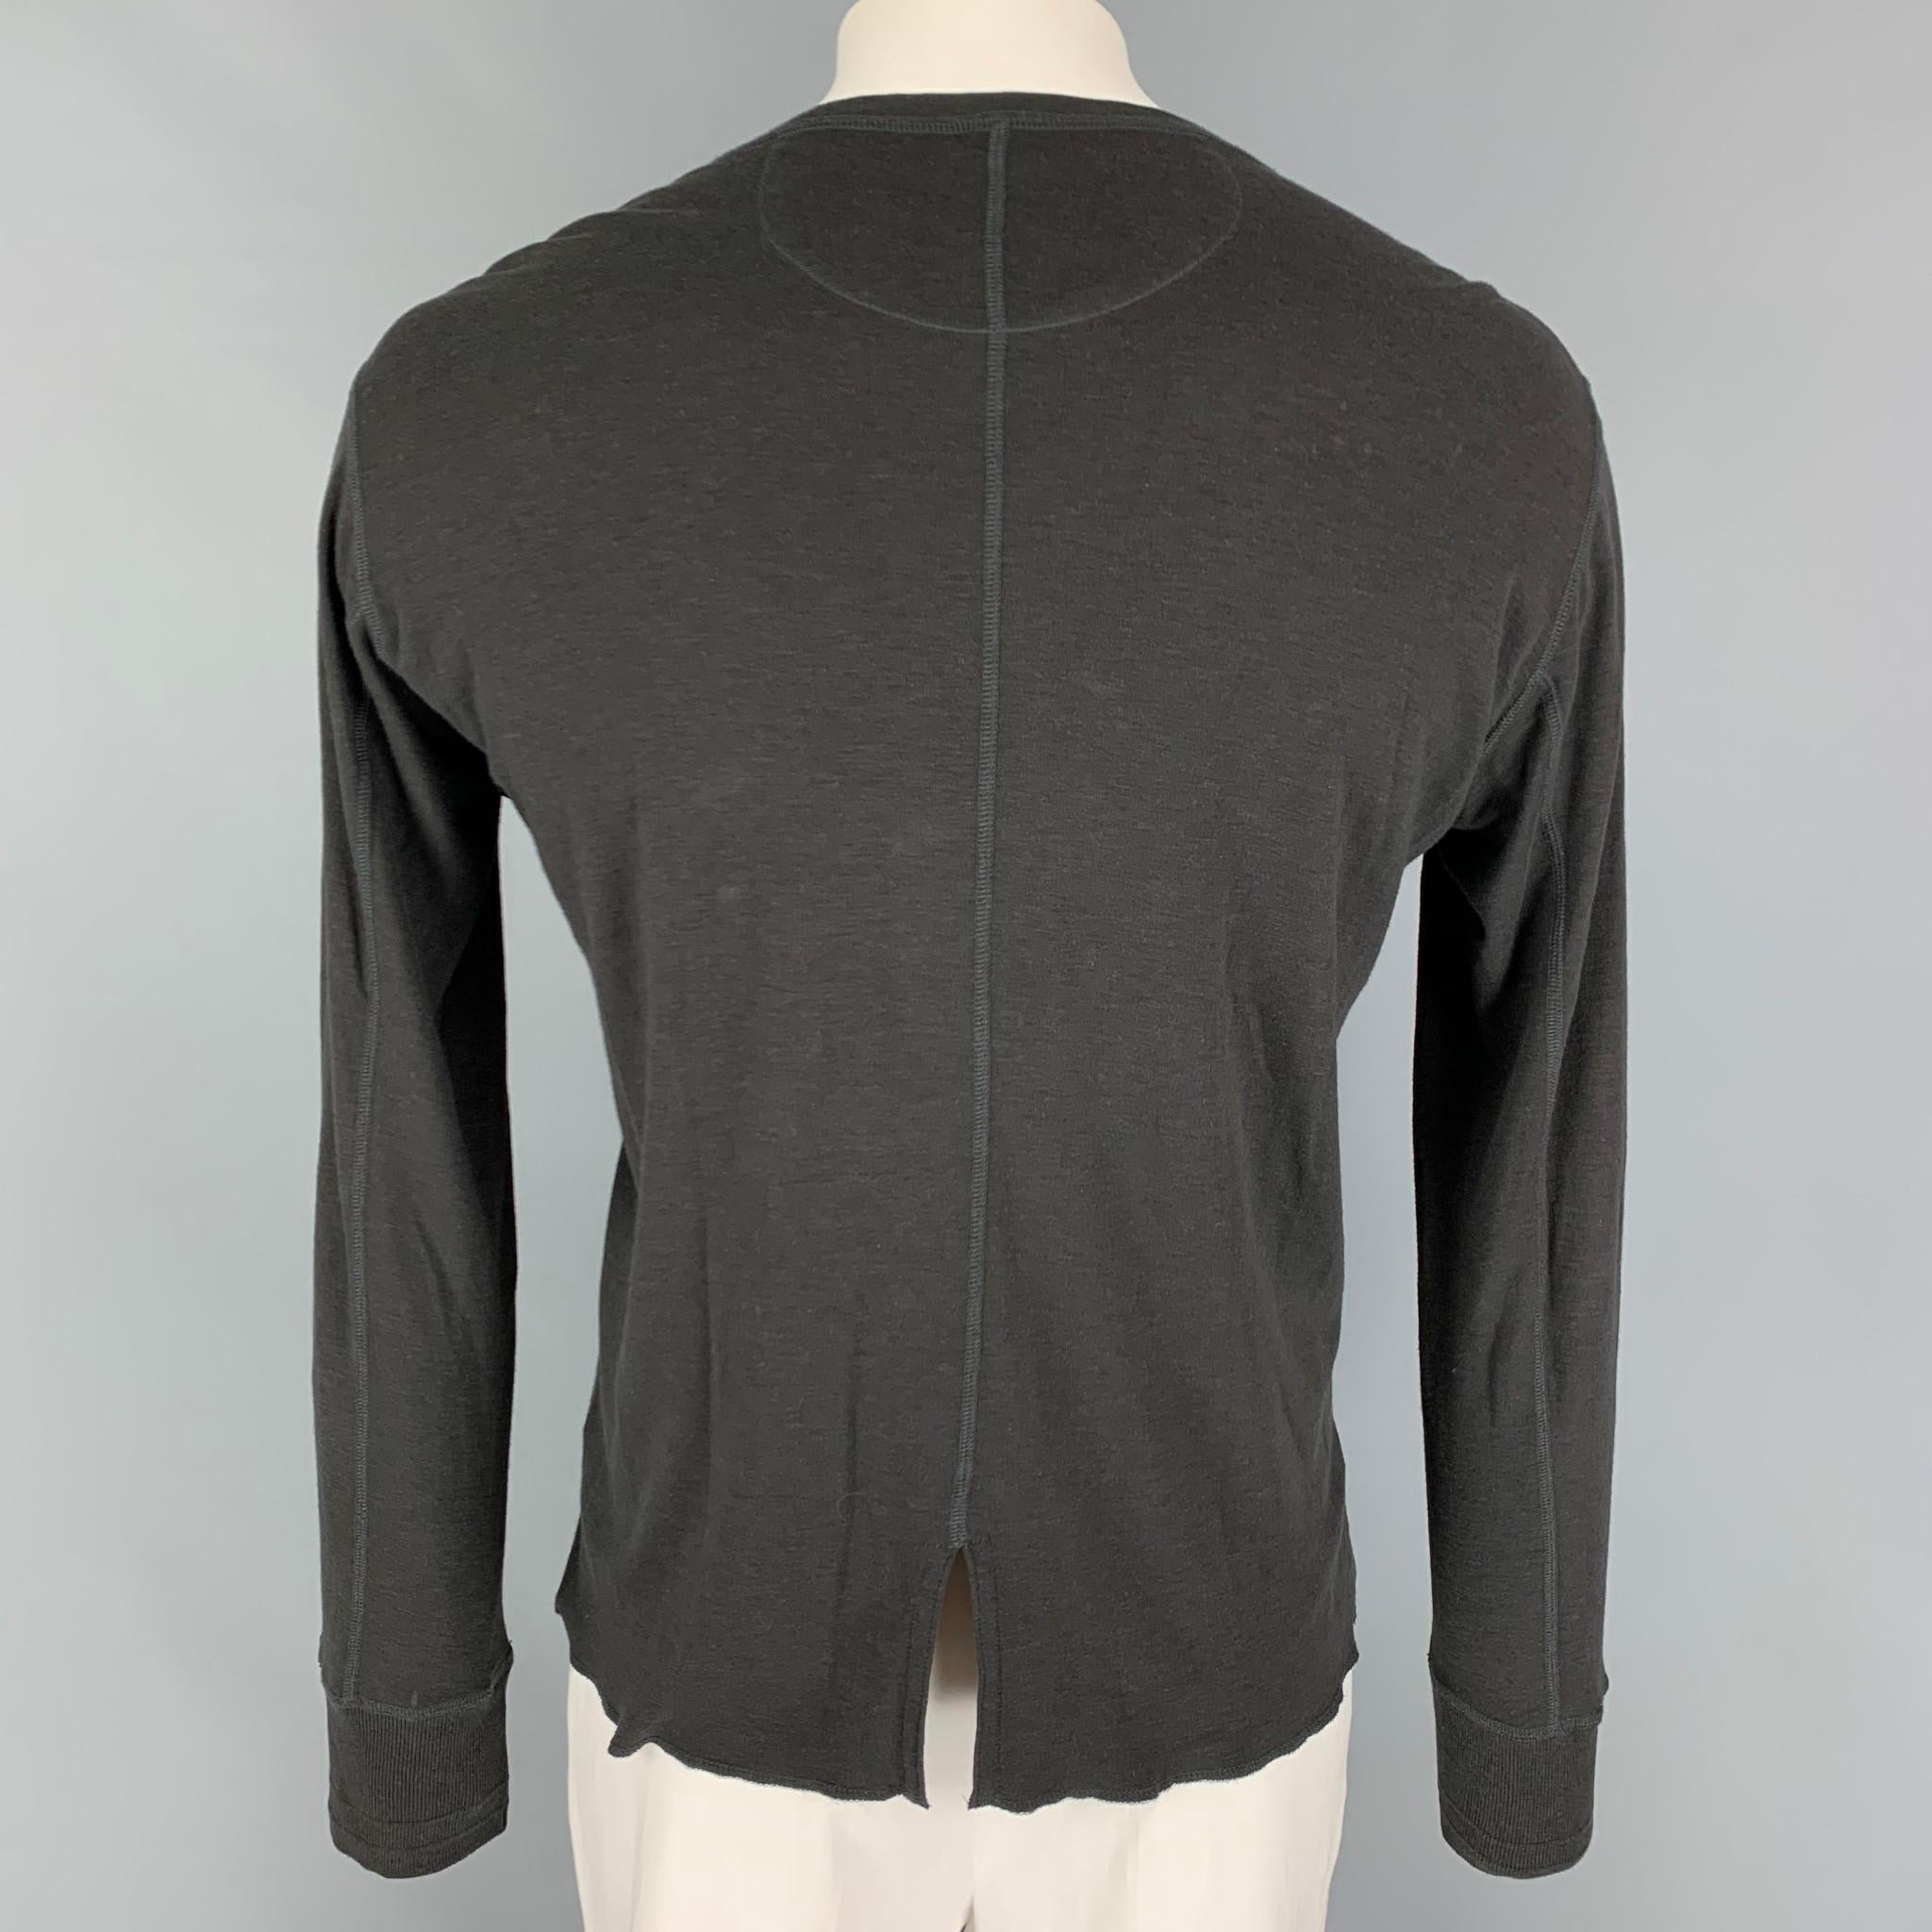 Black KIMINORI MORISHITA Size M Charcoal Cotton Blend Henley T-shirt